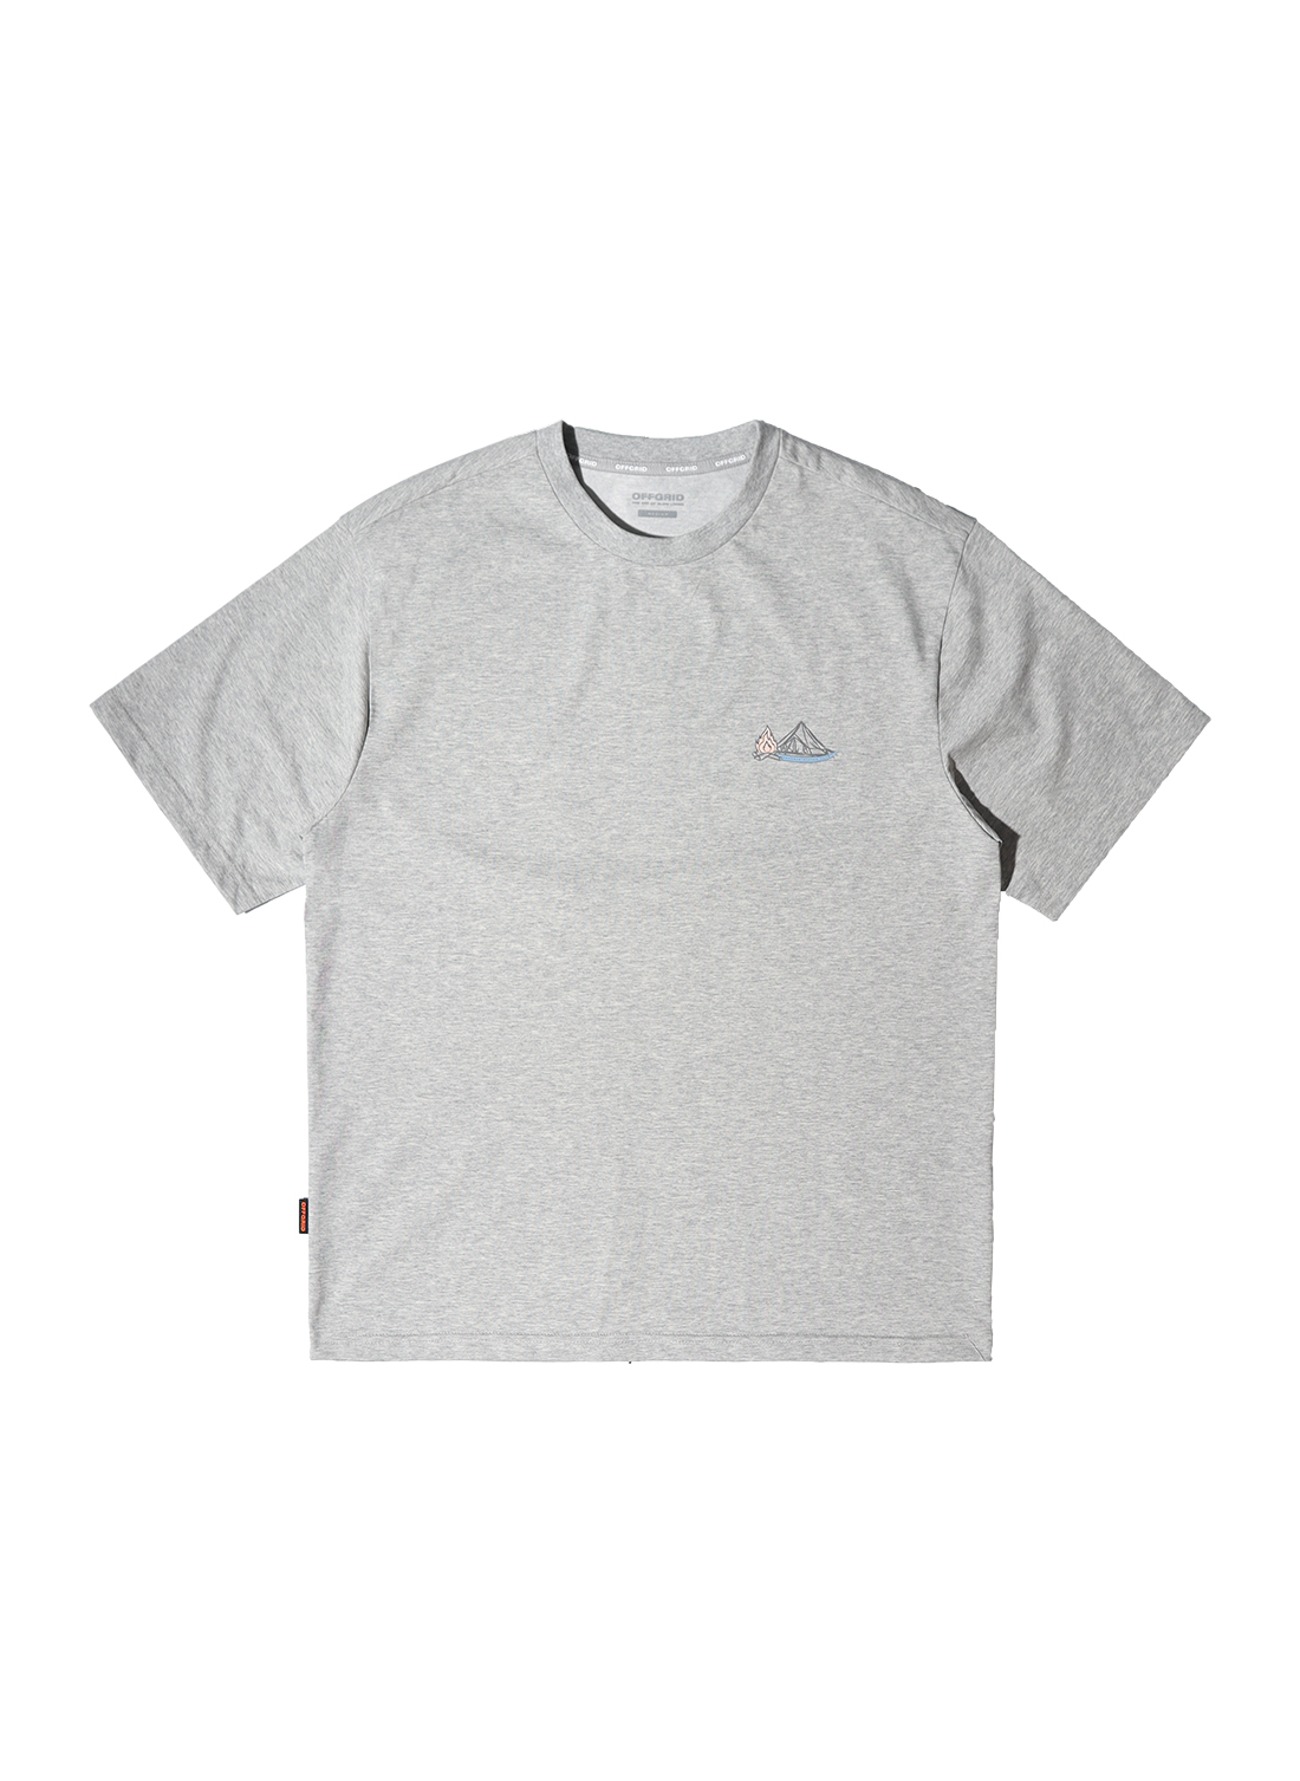 OHC 레디 투 캠프 그래픽 티셔츠-멜란지그레이